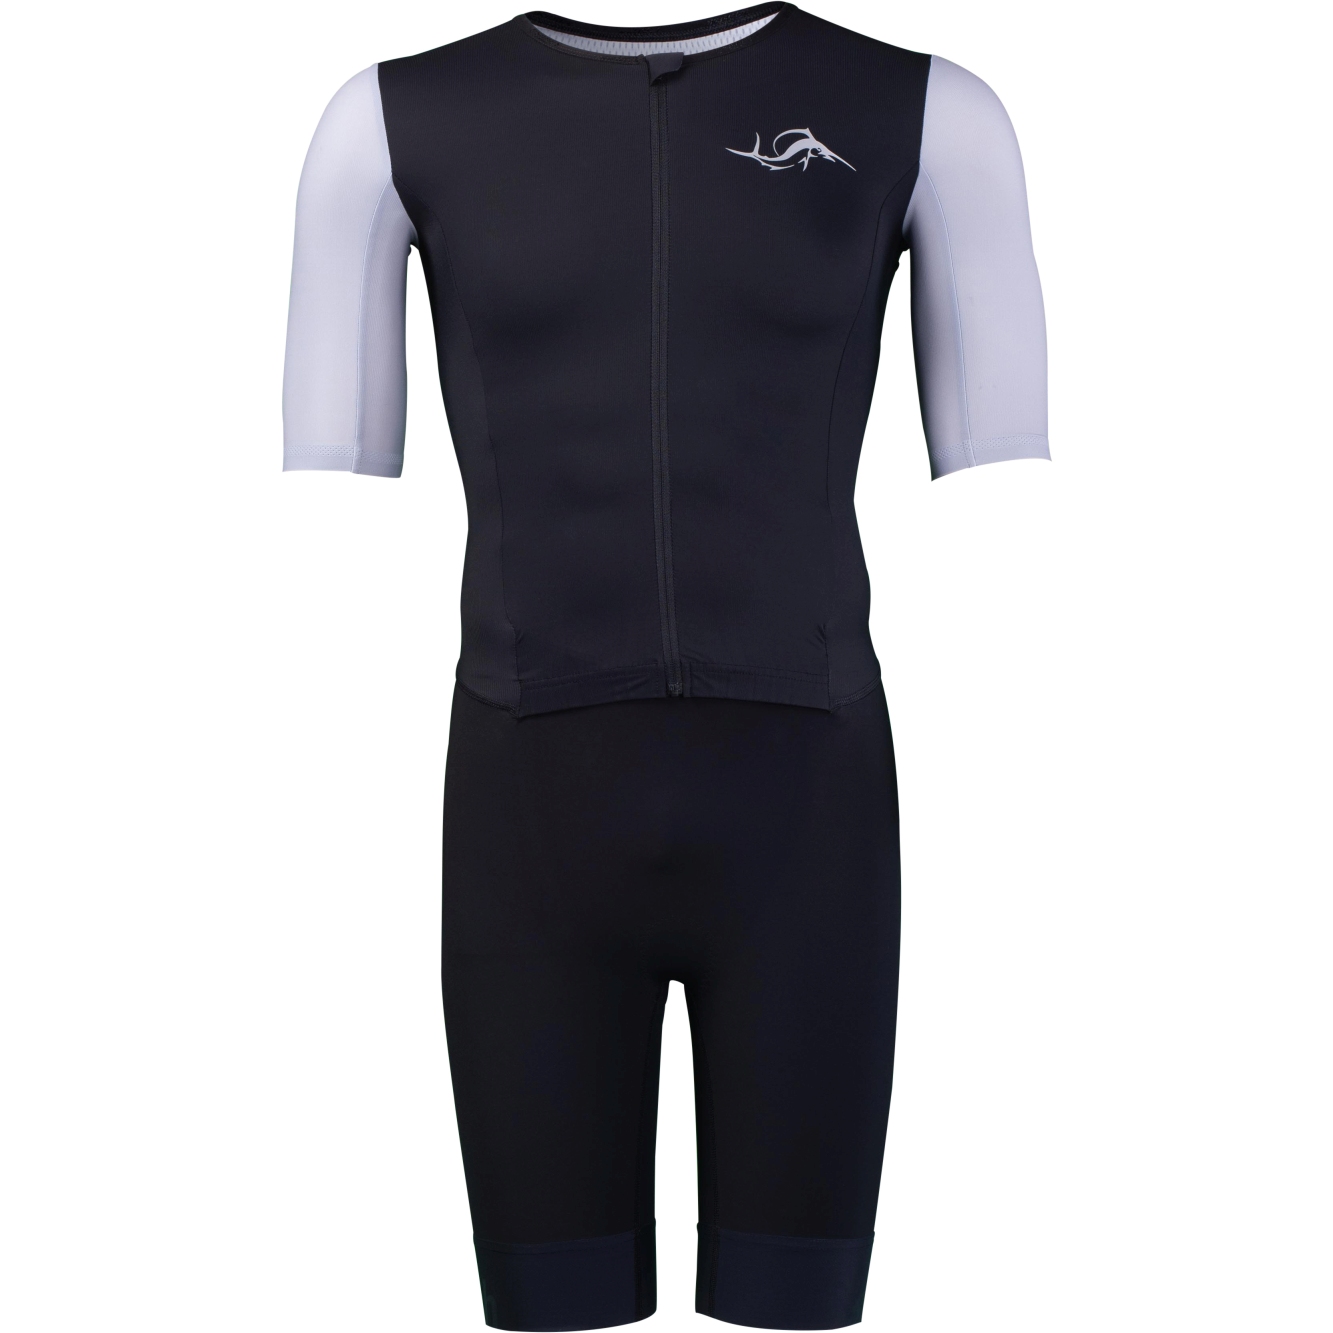 Produktbild von sailfish Herren Aerosuit Perform Triathlon-Einteiler - schwarz